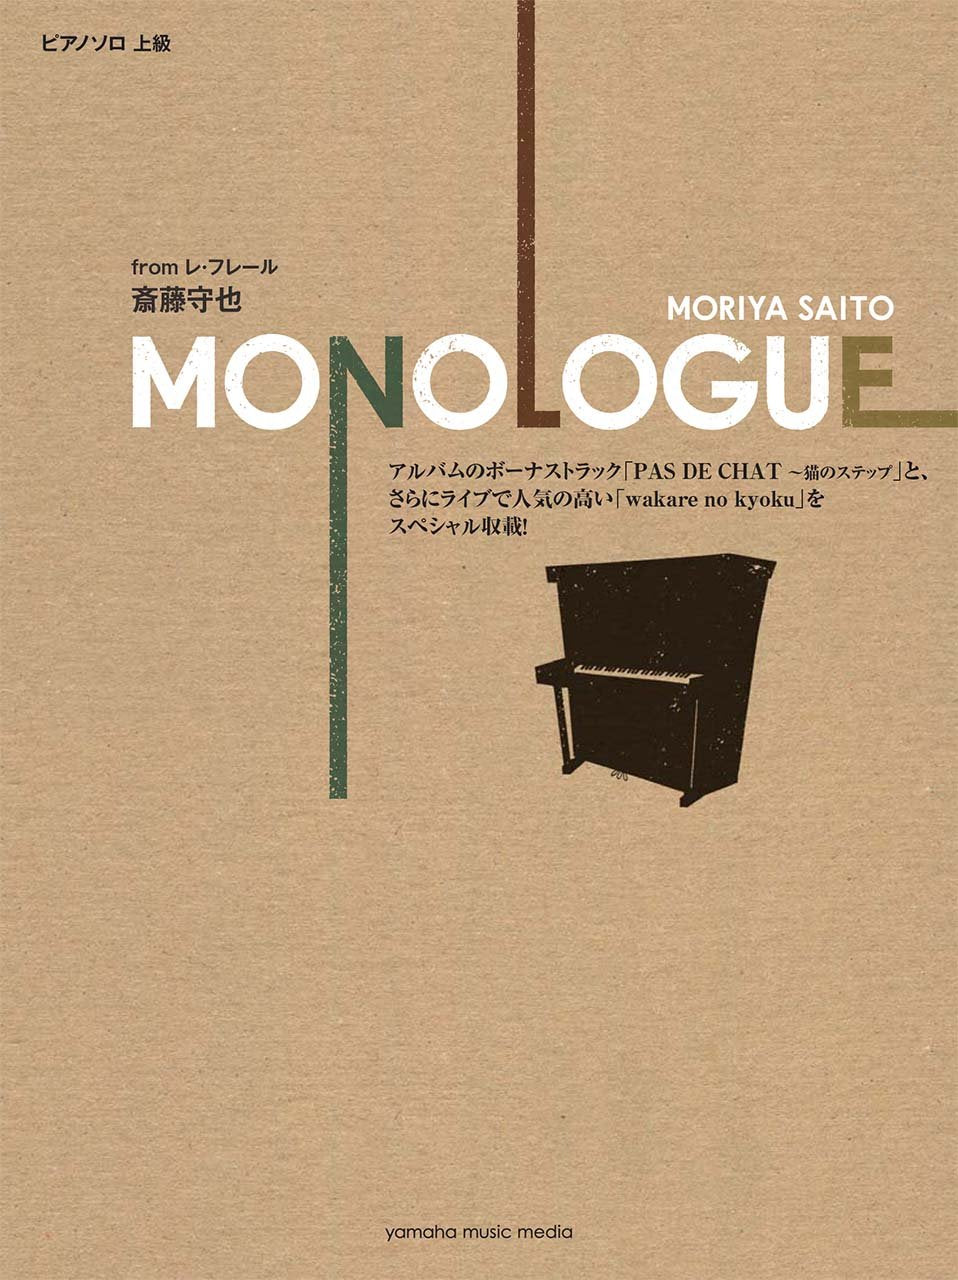 Moriya Saito from Les Freres [MONOLOGUE] Piano Solo Sheet Music Book